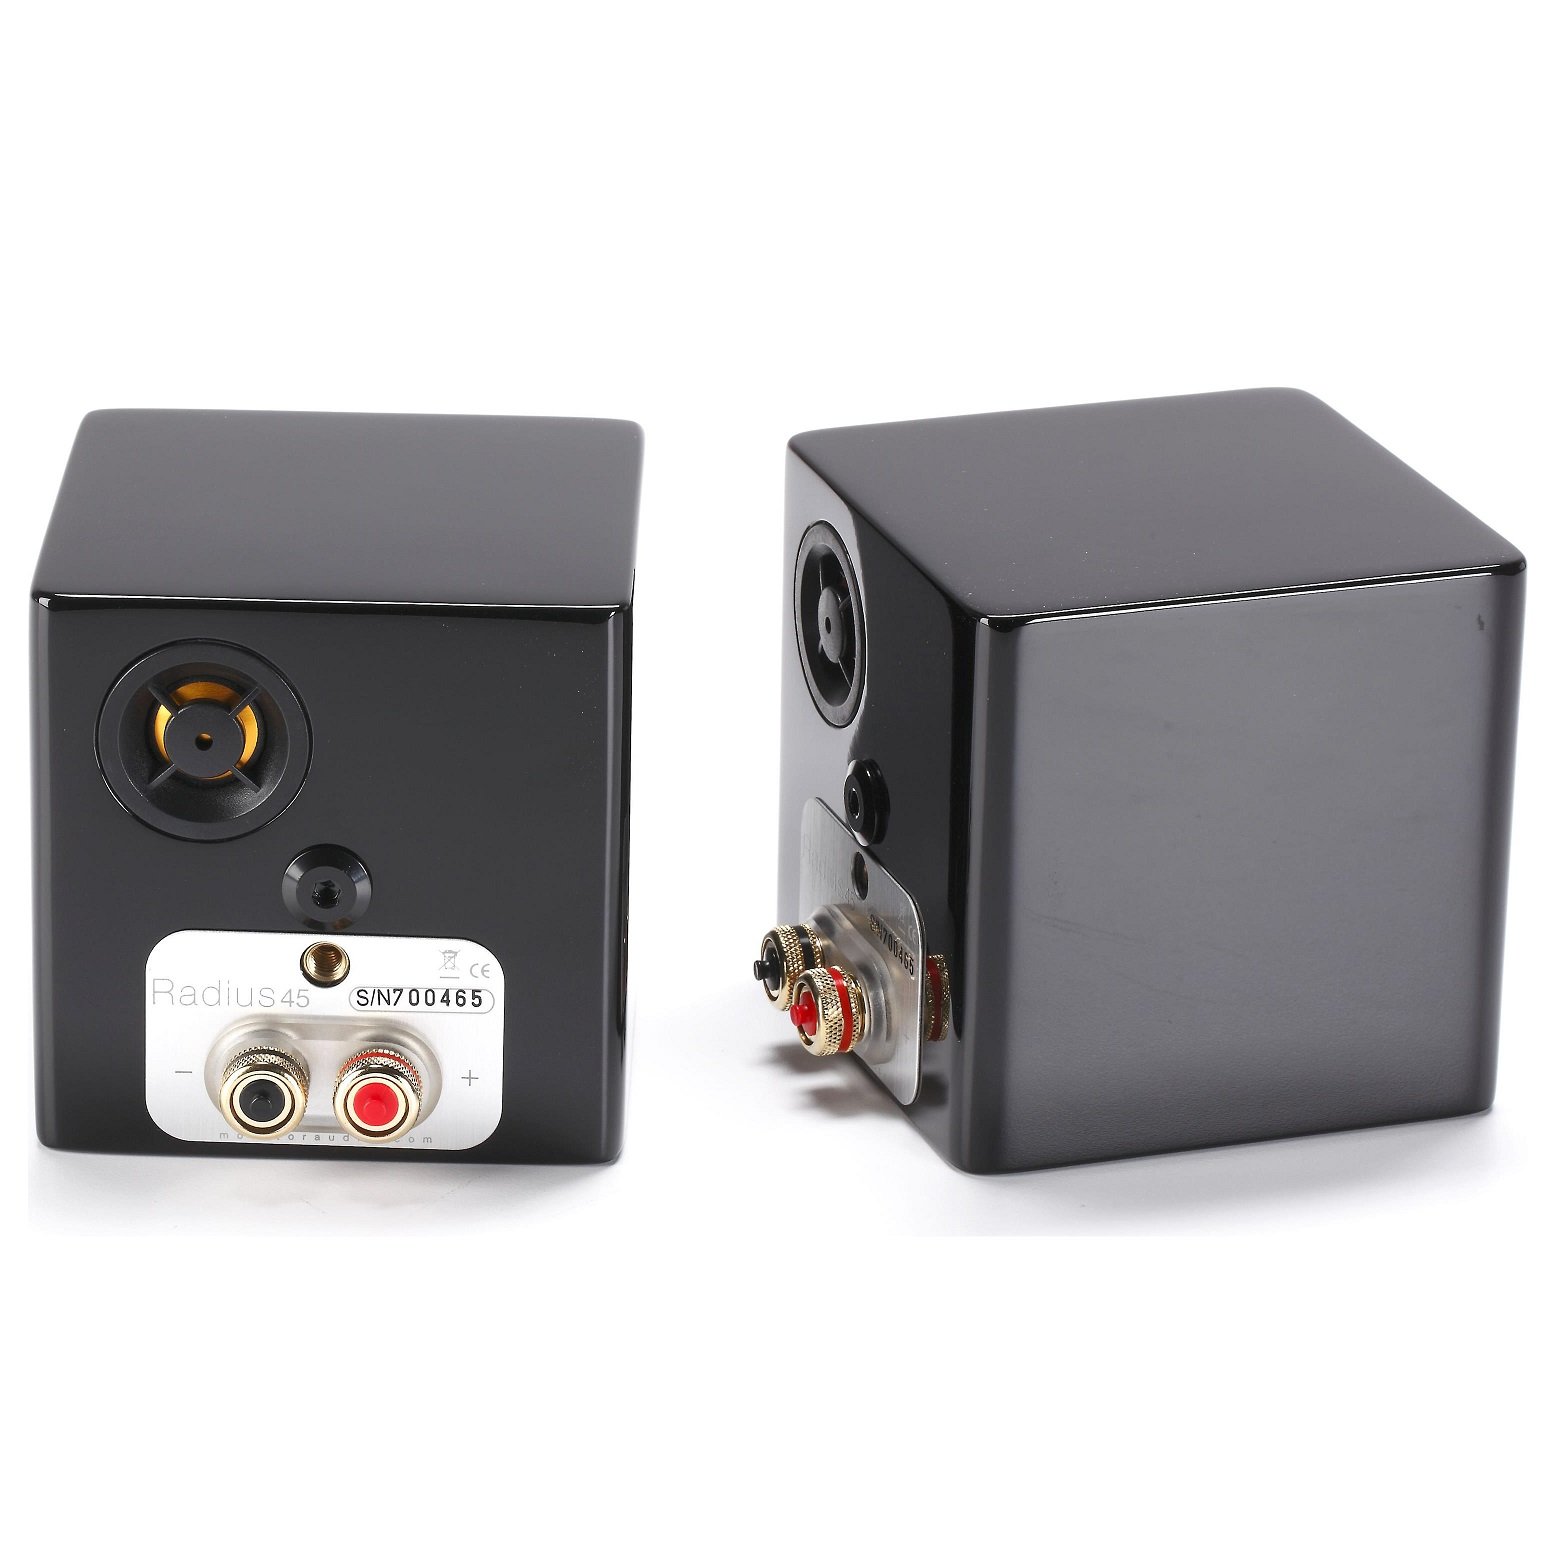 Elástico Corchete experimental Monitor Audio Radius 45. Un altavoz compacto que reina en la zona media